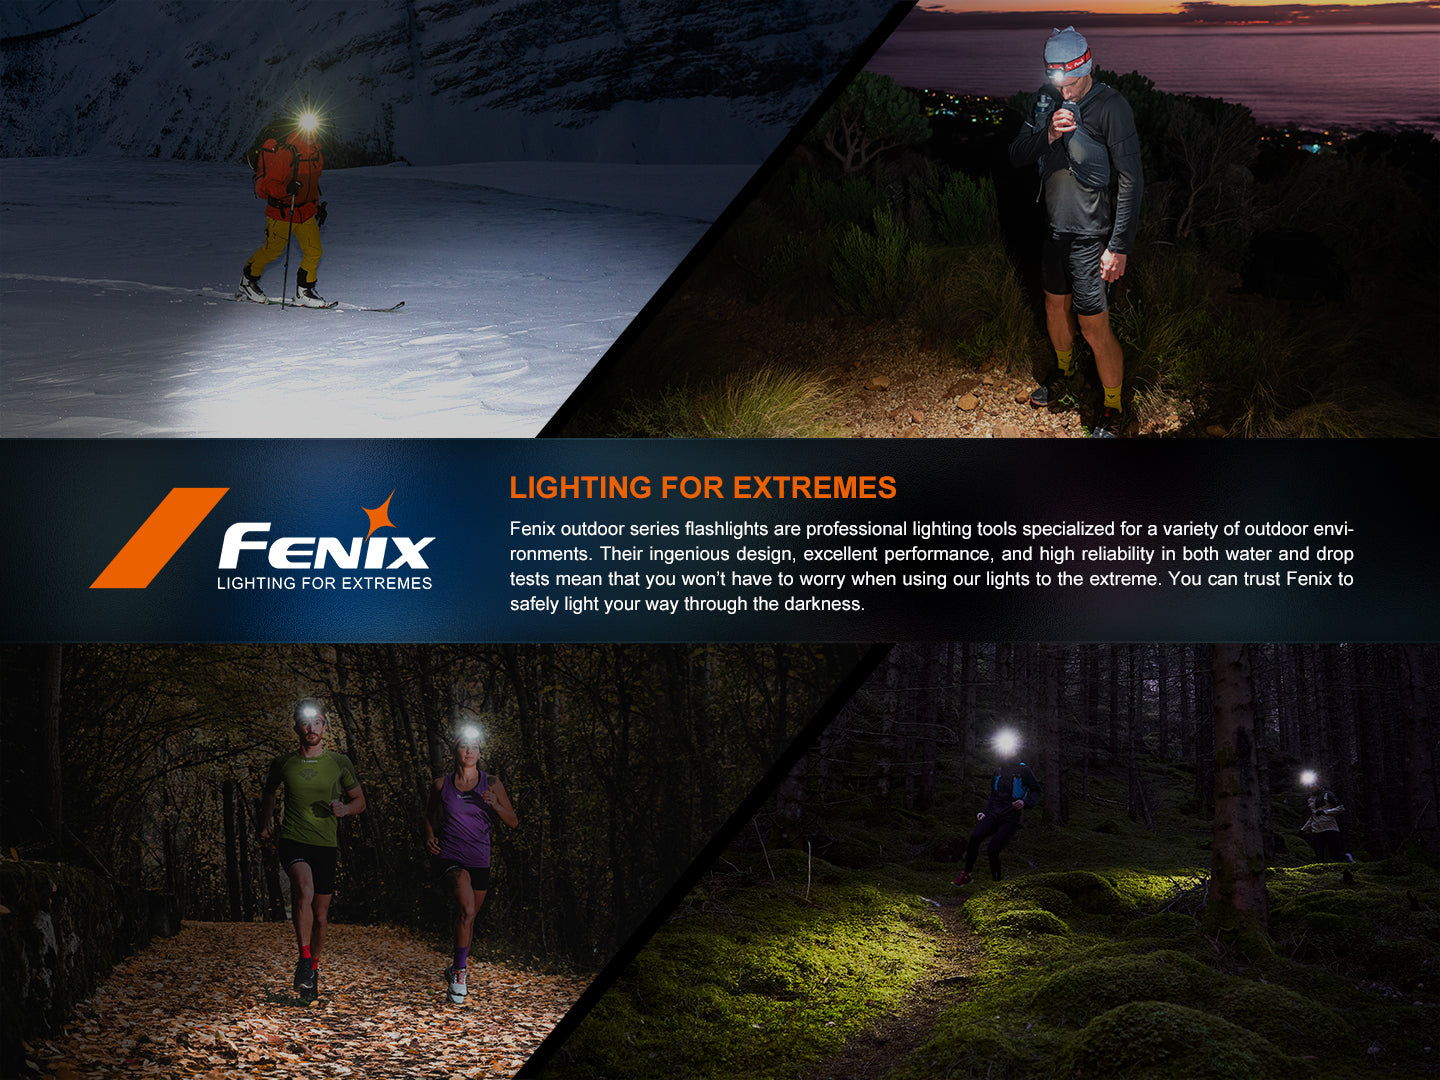 Fenix HM62-T - 1200 lumens - Rechargeable USB-C - Revendeur Officiel Lampes FENIX depuis 2008 | Votre Boutique en ligne FENIX®